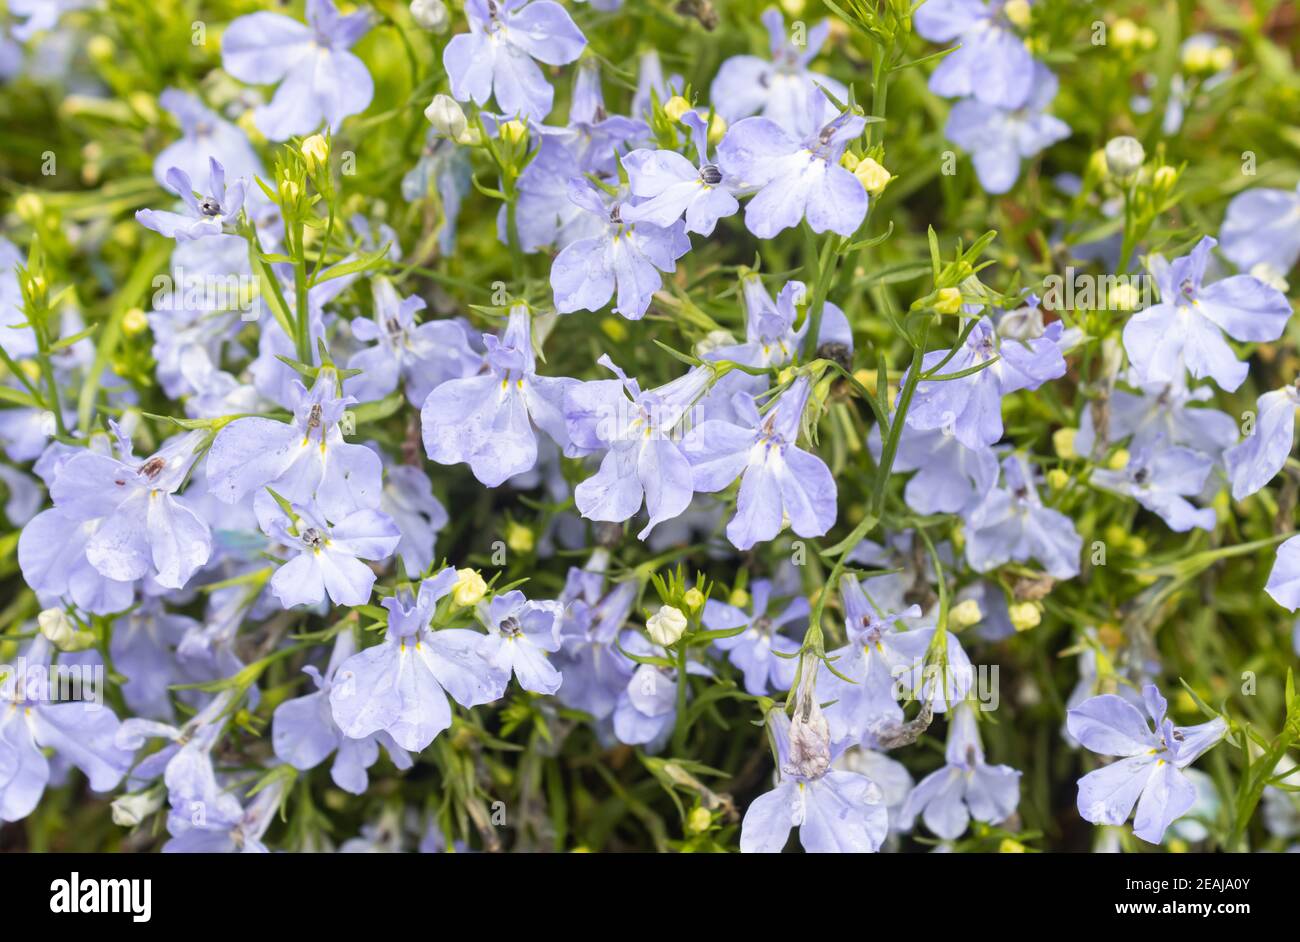 Purple Lobelia Flower in Garden Stock Photo - Alamy